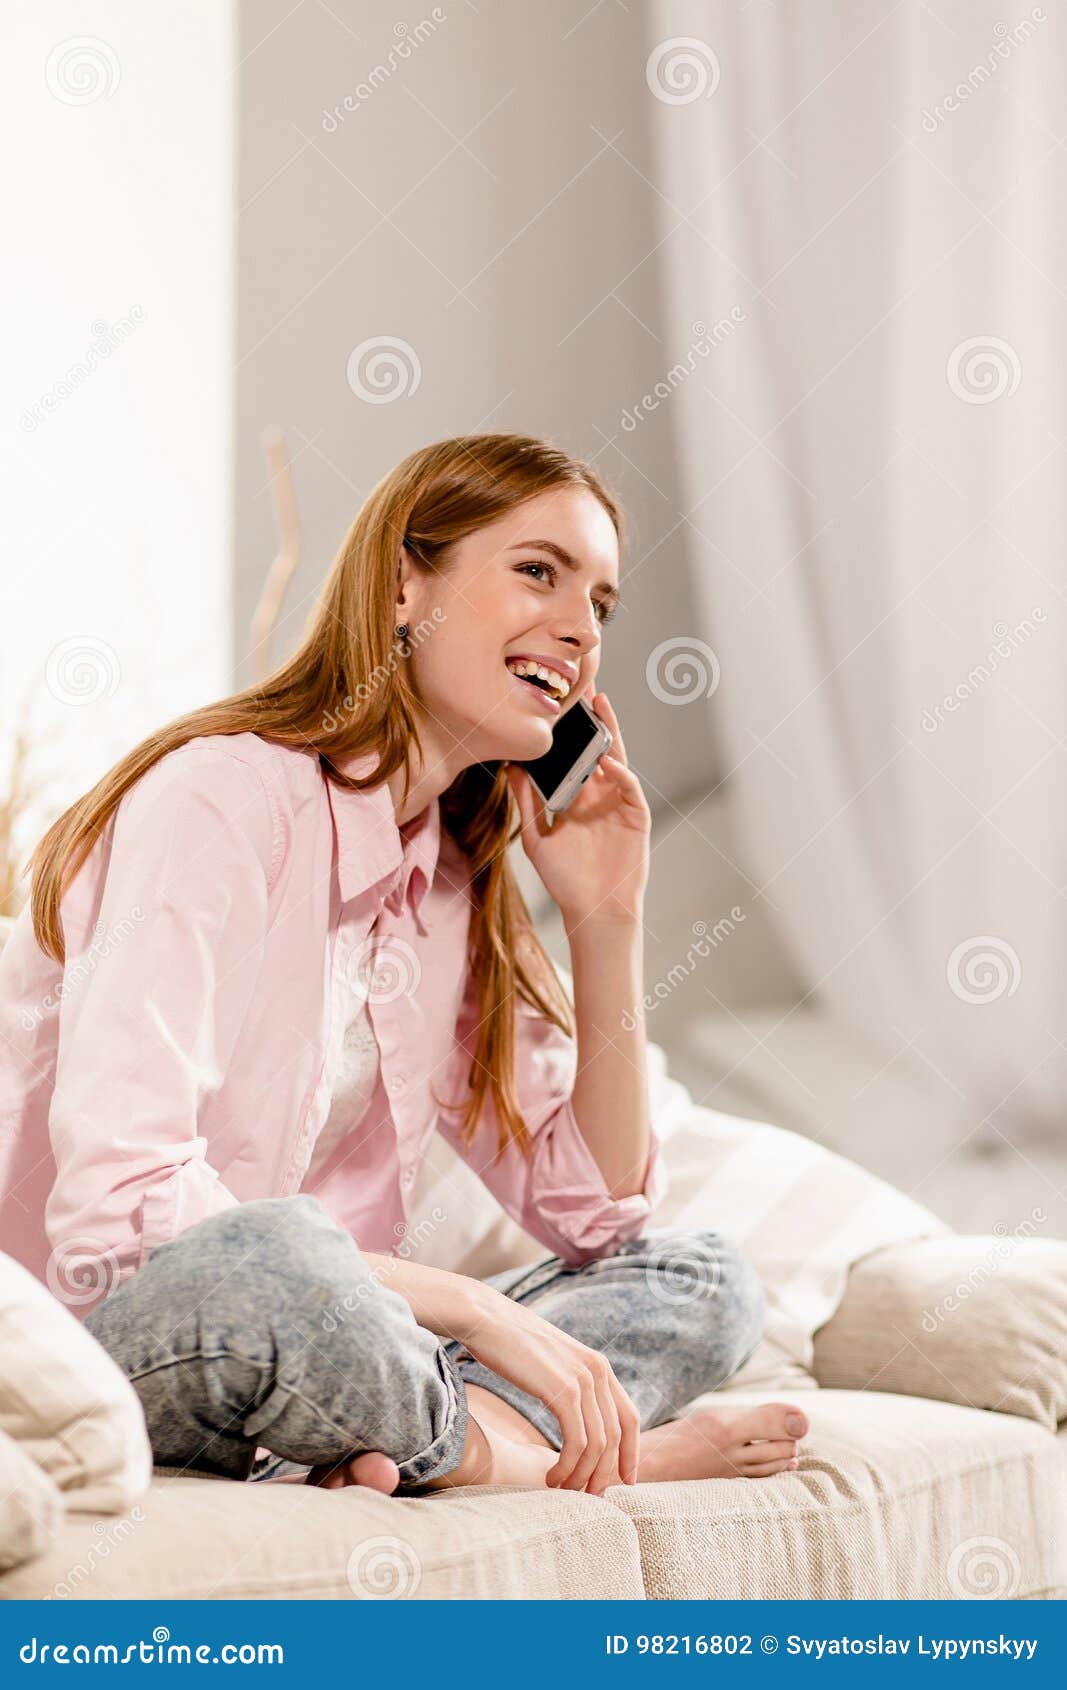 Просто в телефоне сидим. Девушки разговаривают в комнате. Девушка сидит в телефоне. Девушка сидит в телефоне фото. Девушка говорит по телефону на диване.